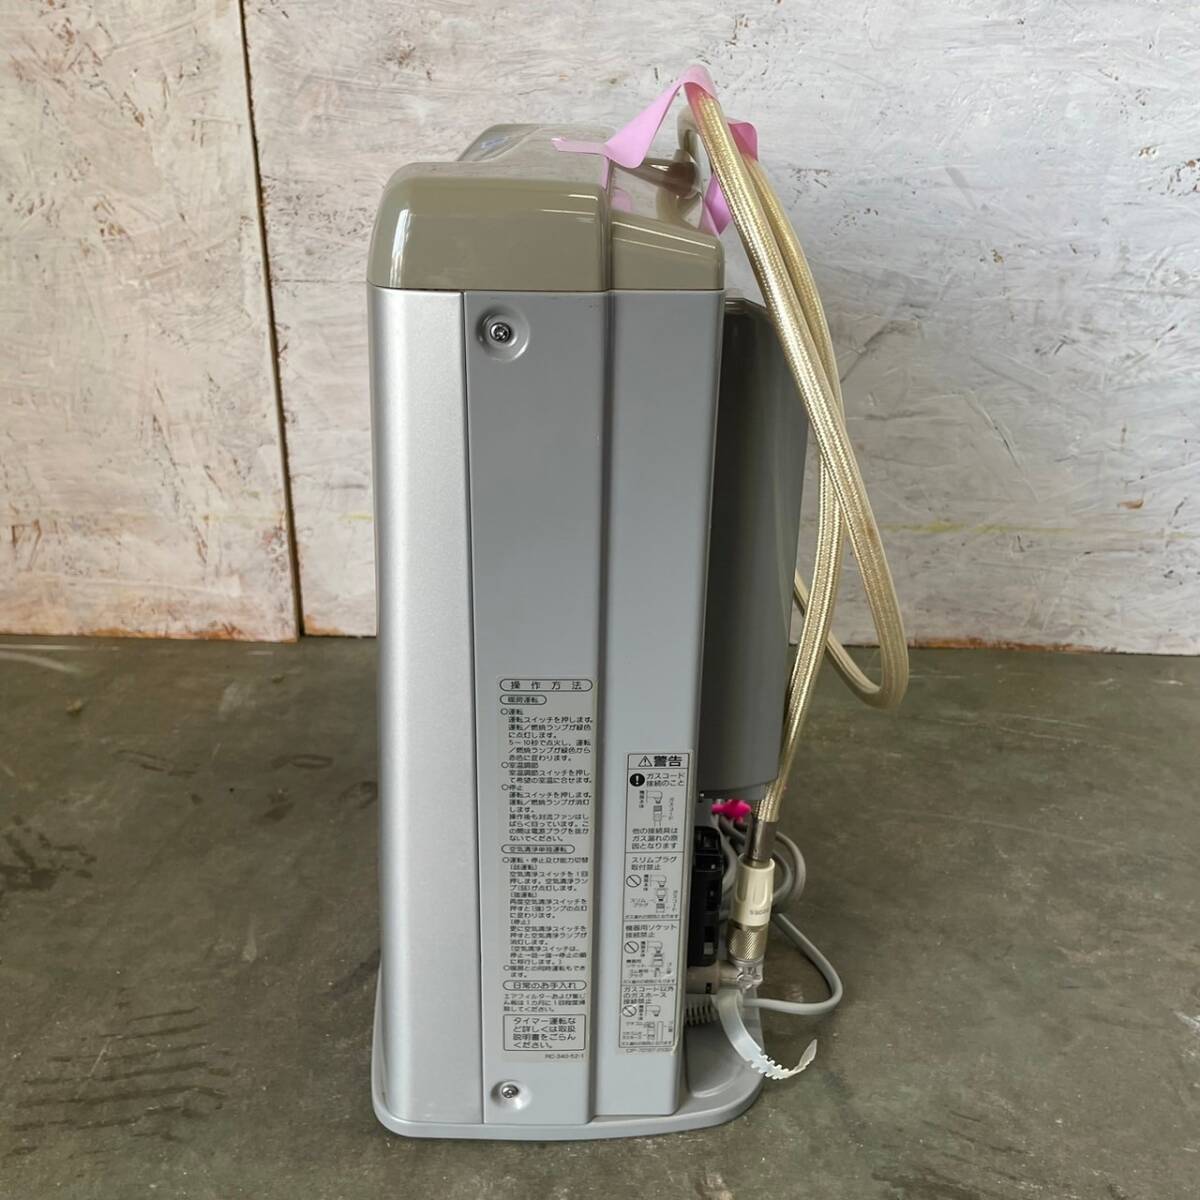 [Rinnai] Rinnai газовый тепловентилятор очиститель воздуха есть LP газовый пропан газ RC-340AC-2 ①